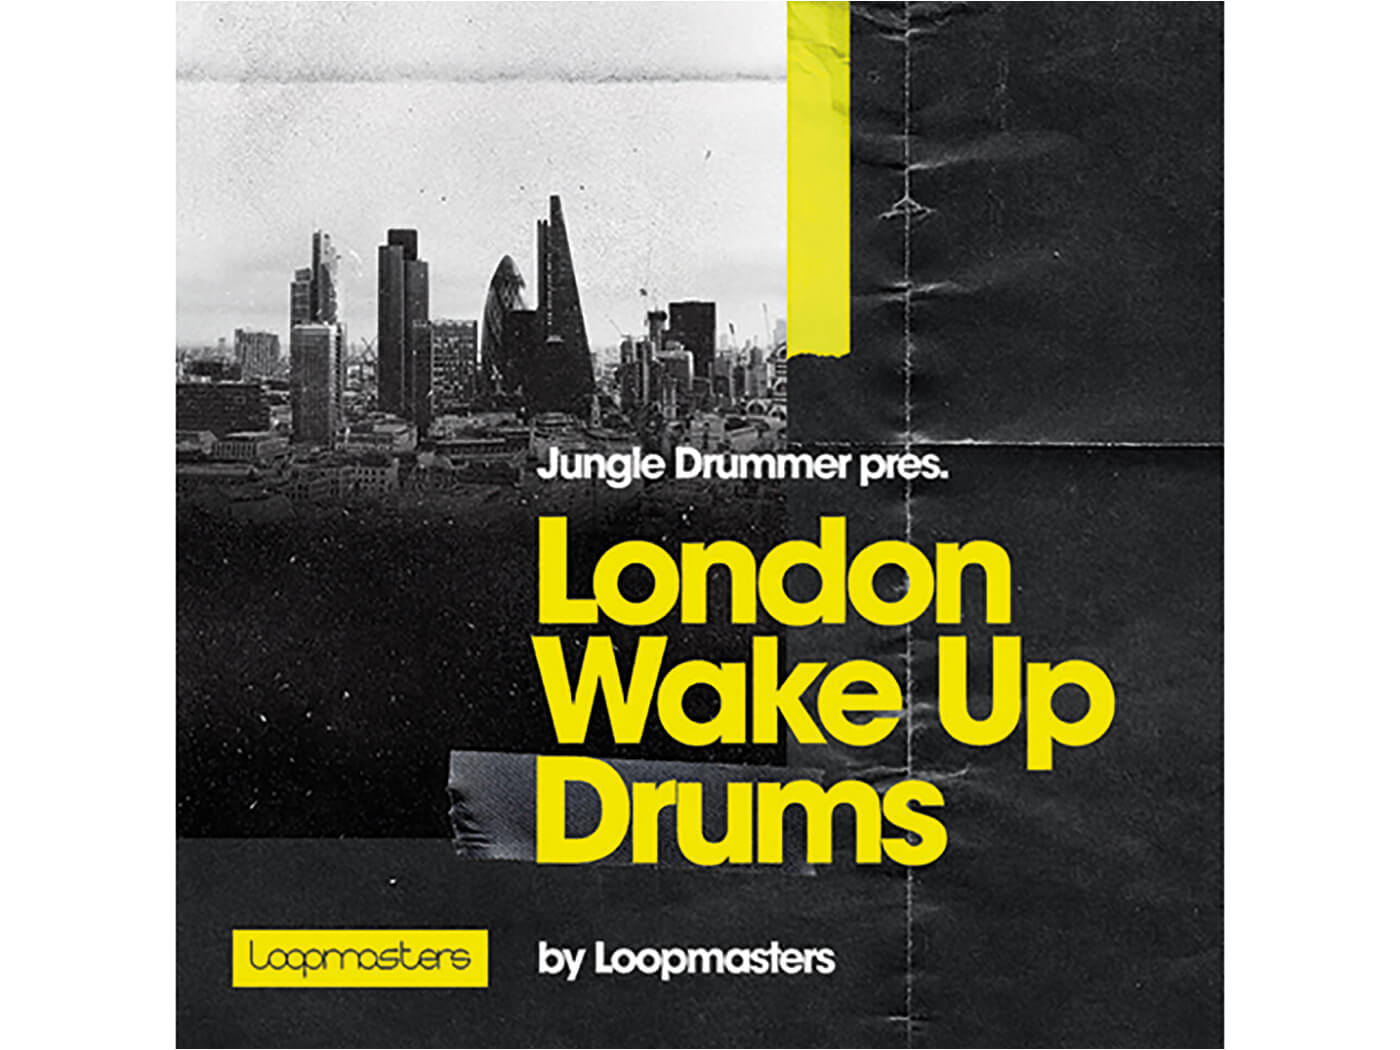 Loopmasters London Wake Up Drums